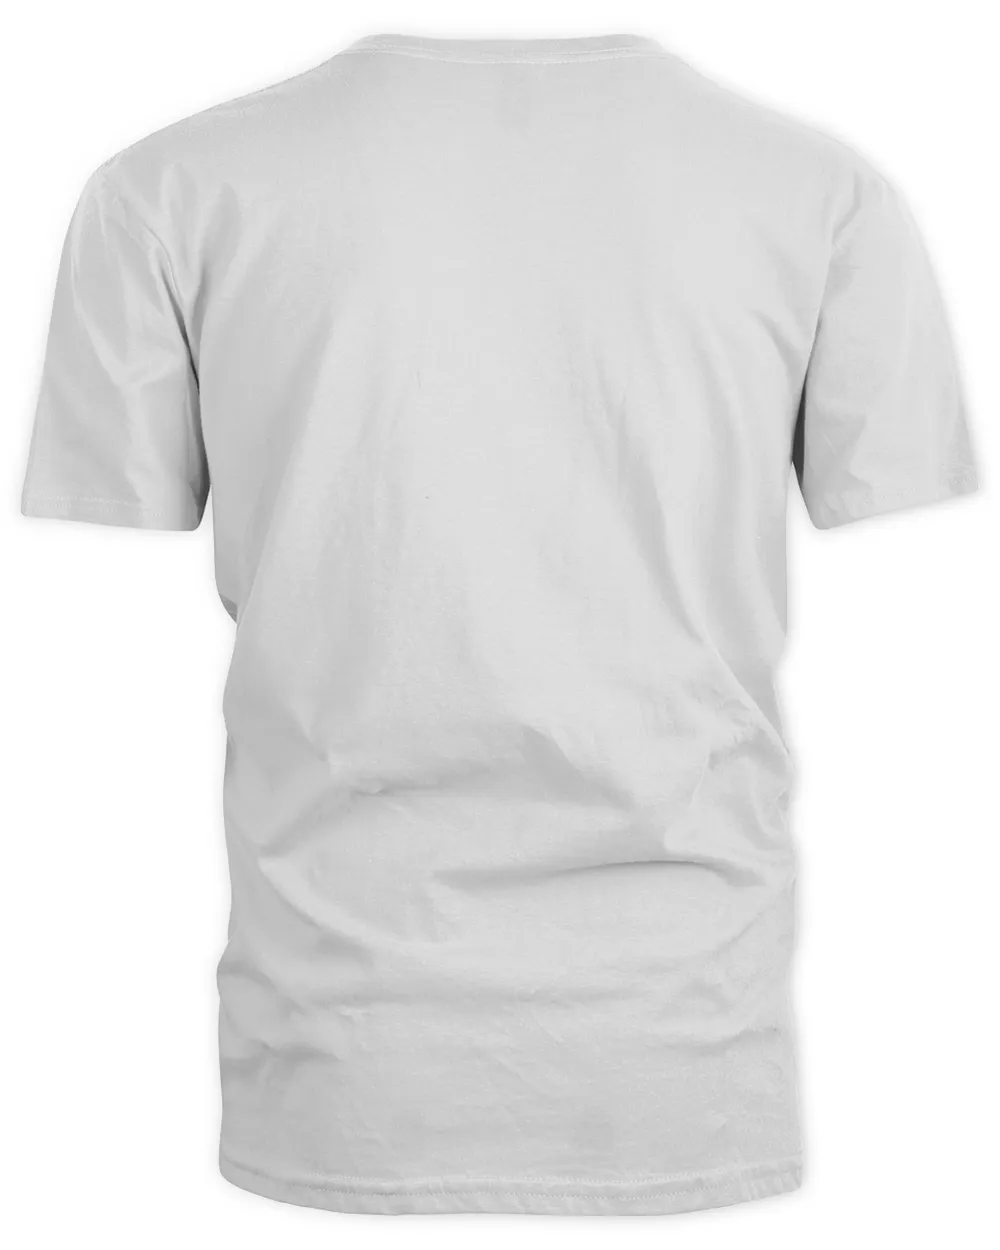 RD UTV Gift - Got Dirt  Funny SxS SSV Gift Long Sleeve Shirt